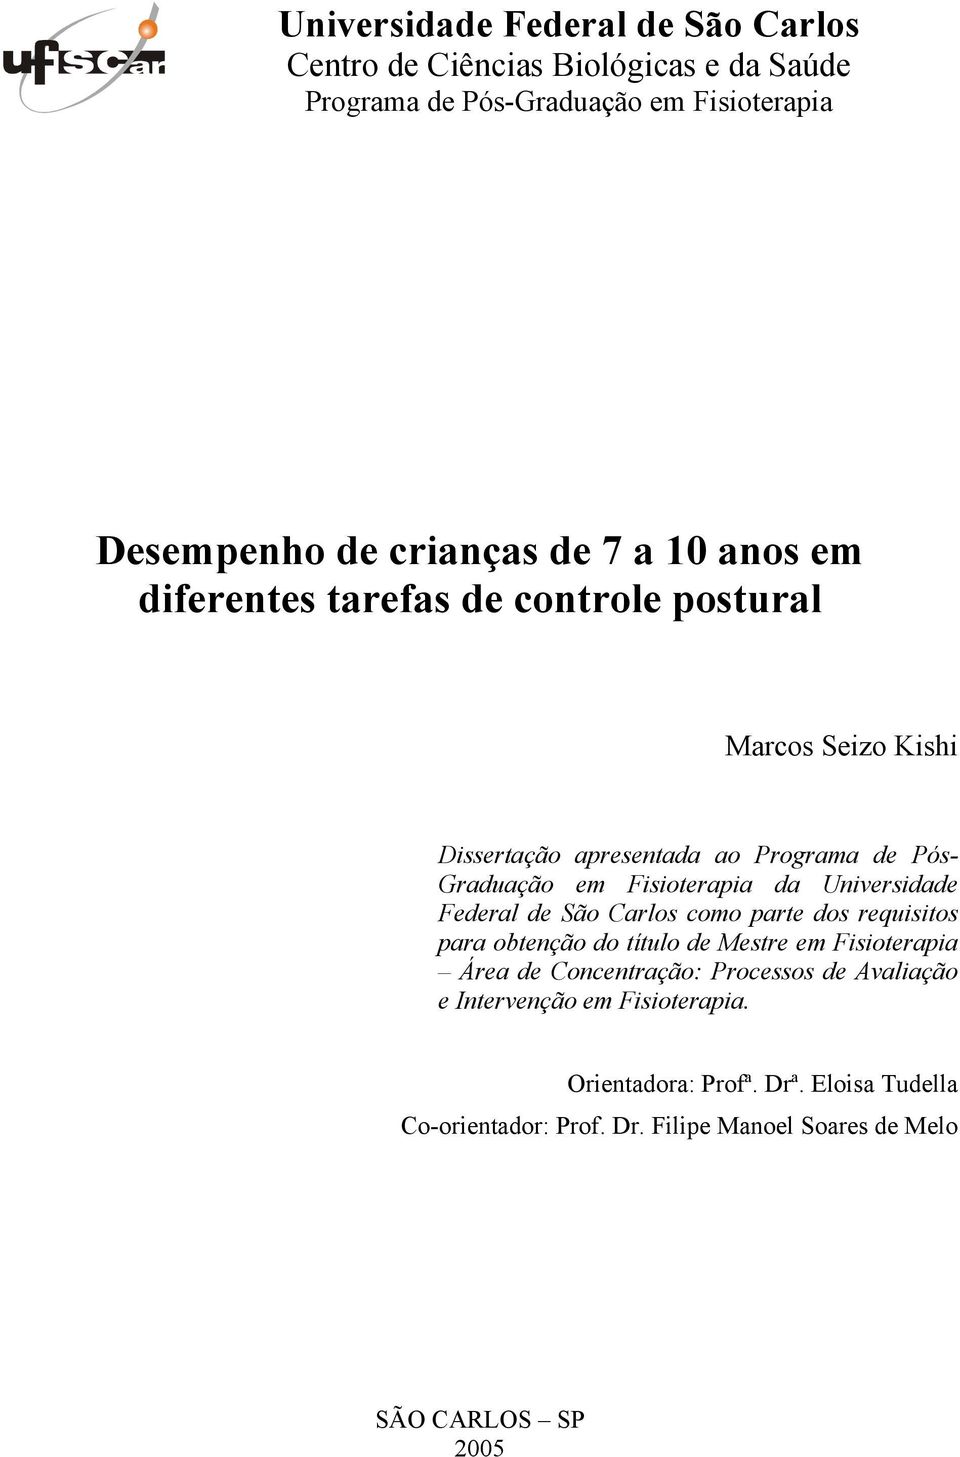 Universidade Federal de São Carlos como parte dos requisitos para obtenção do título de Mestre em Fisioterapia Área de Concentração: Processos de